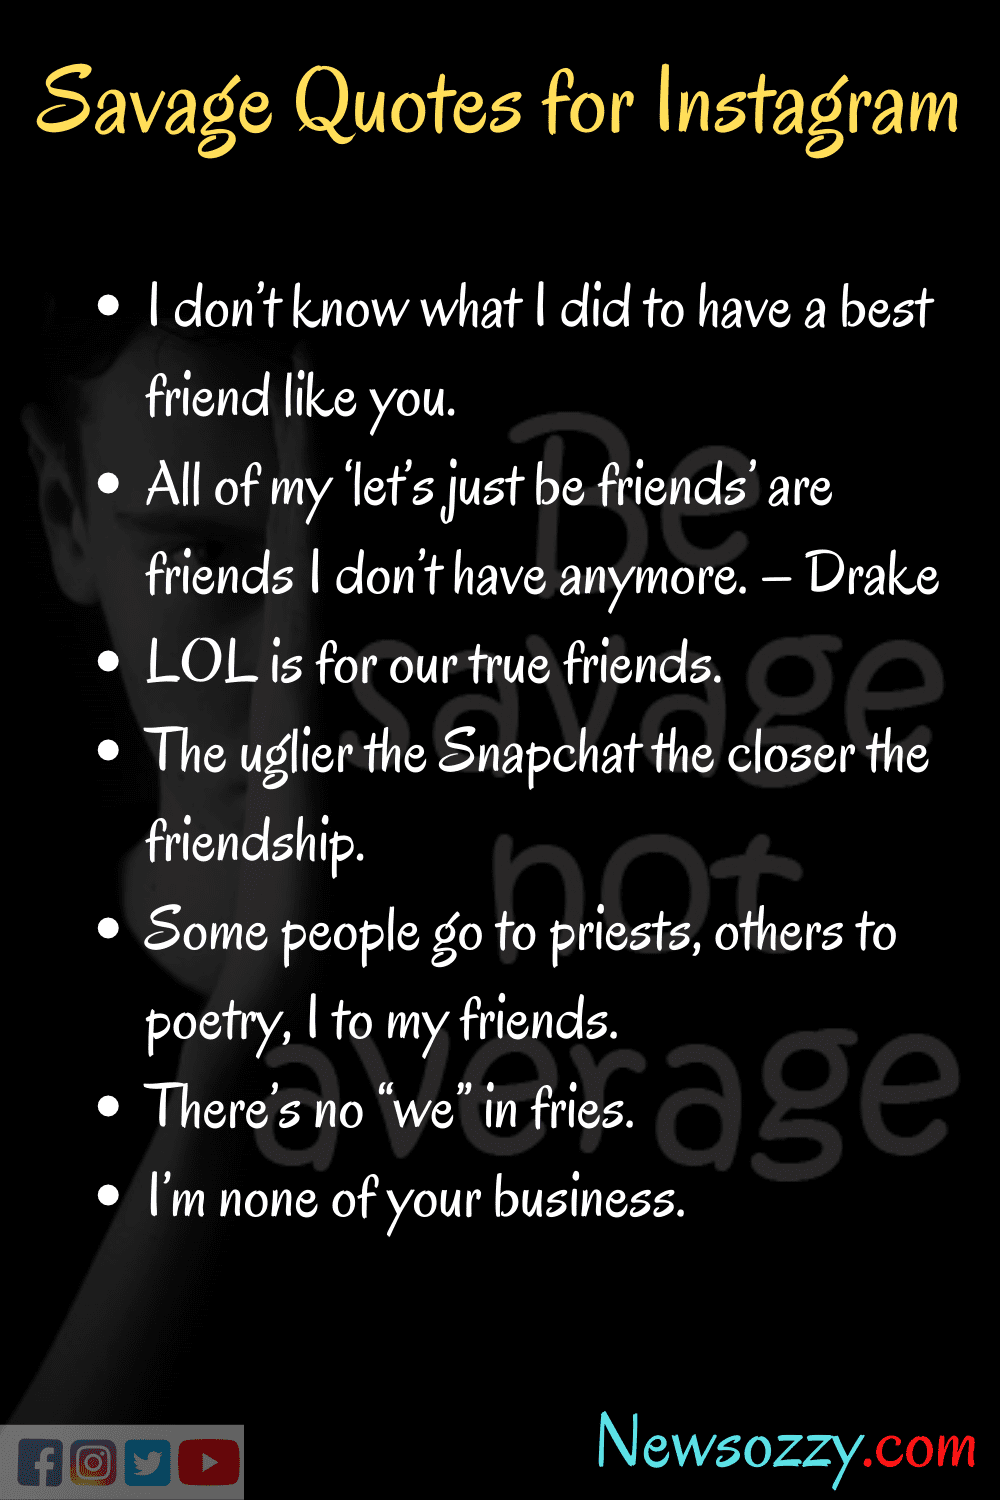 Instagram Savage Quotes